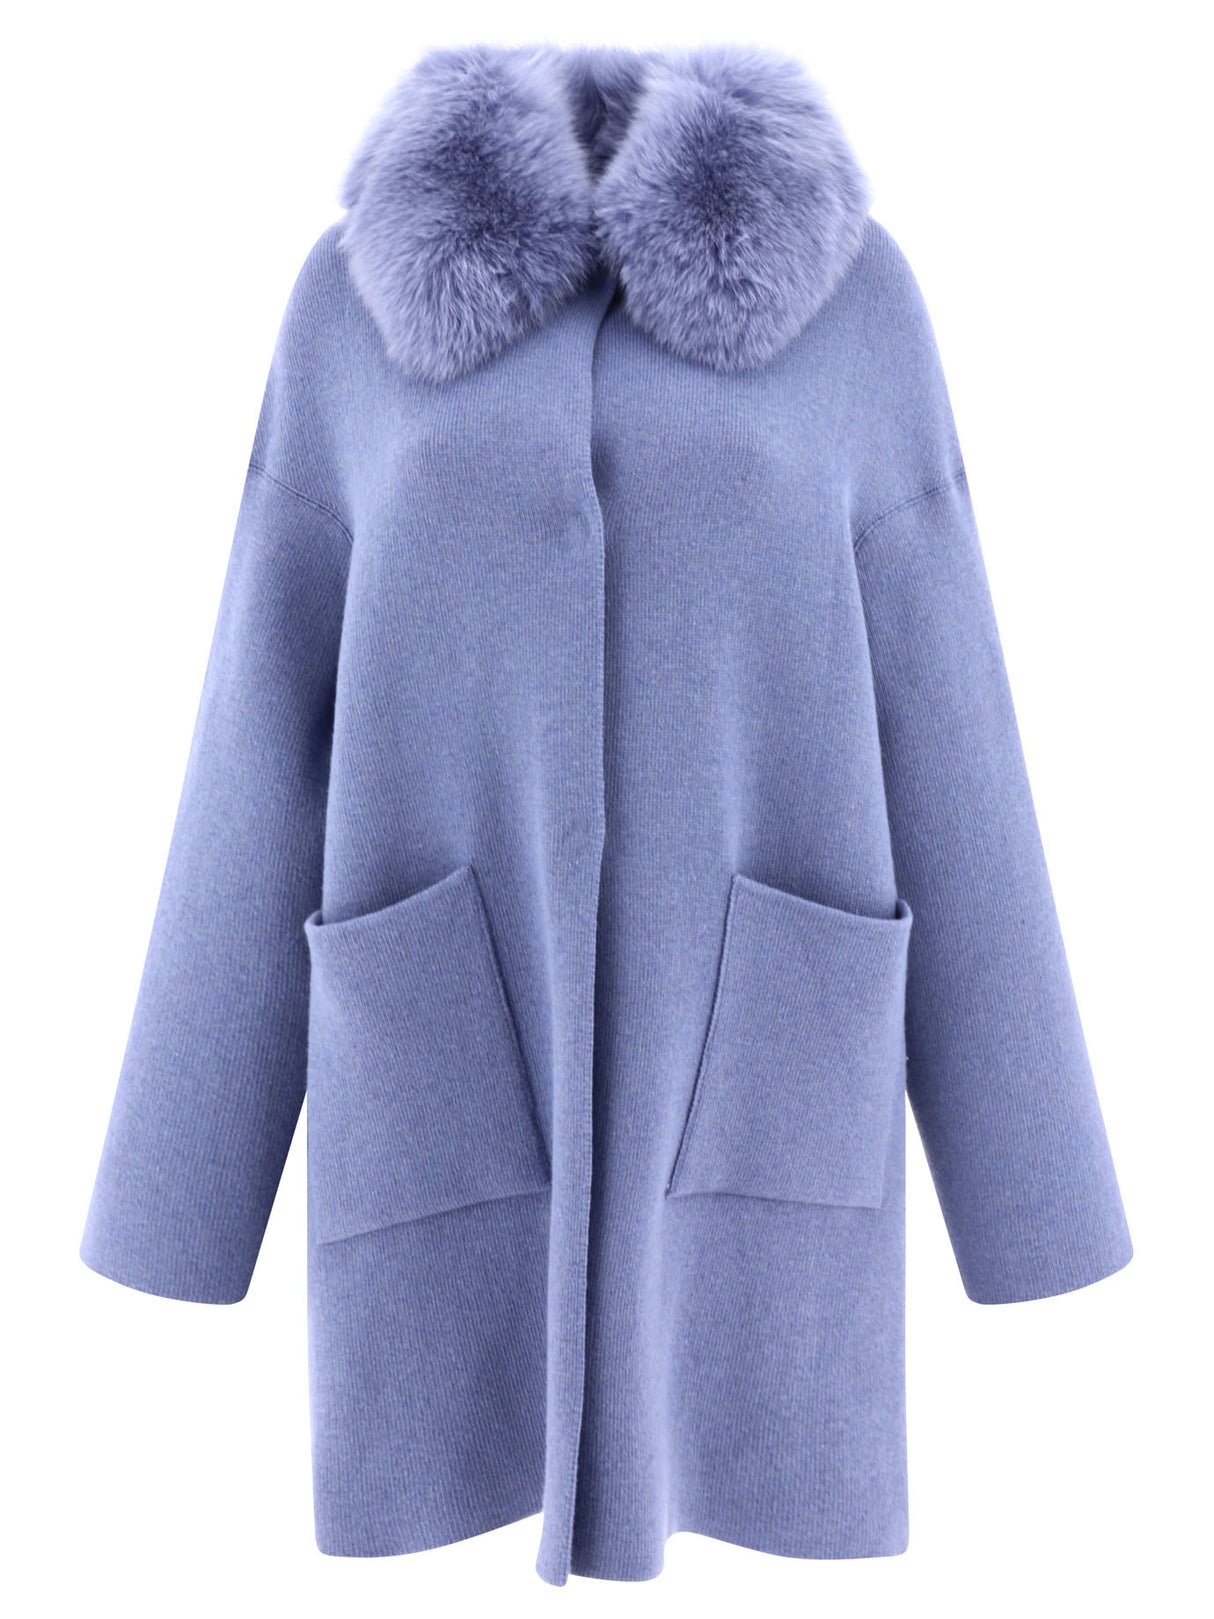 Áo khoác Lane màu xanh nhạt sang trọng từ lông cừu và cát-len cho phái nữ